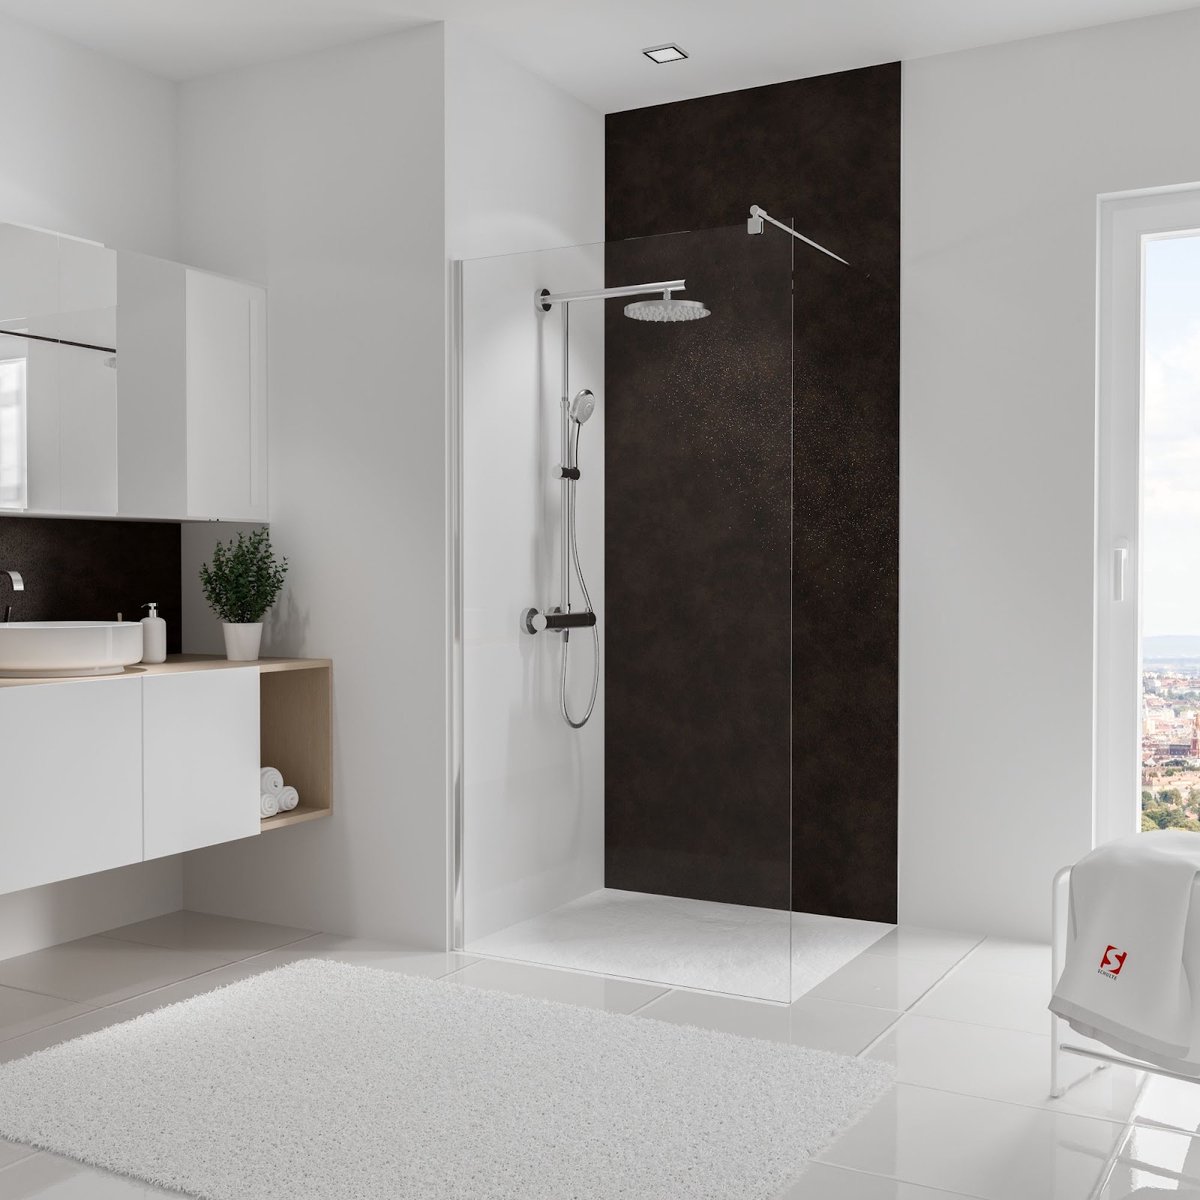 Schulte Deco Design Decor - metaal roest-effect - 100x255 - zelf inkortbaar en zelfklevend - wanddecoratie - muurdecoratie - badkamer wandpaneel - muurbekleding